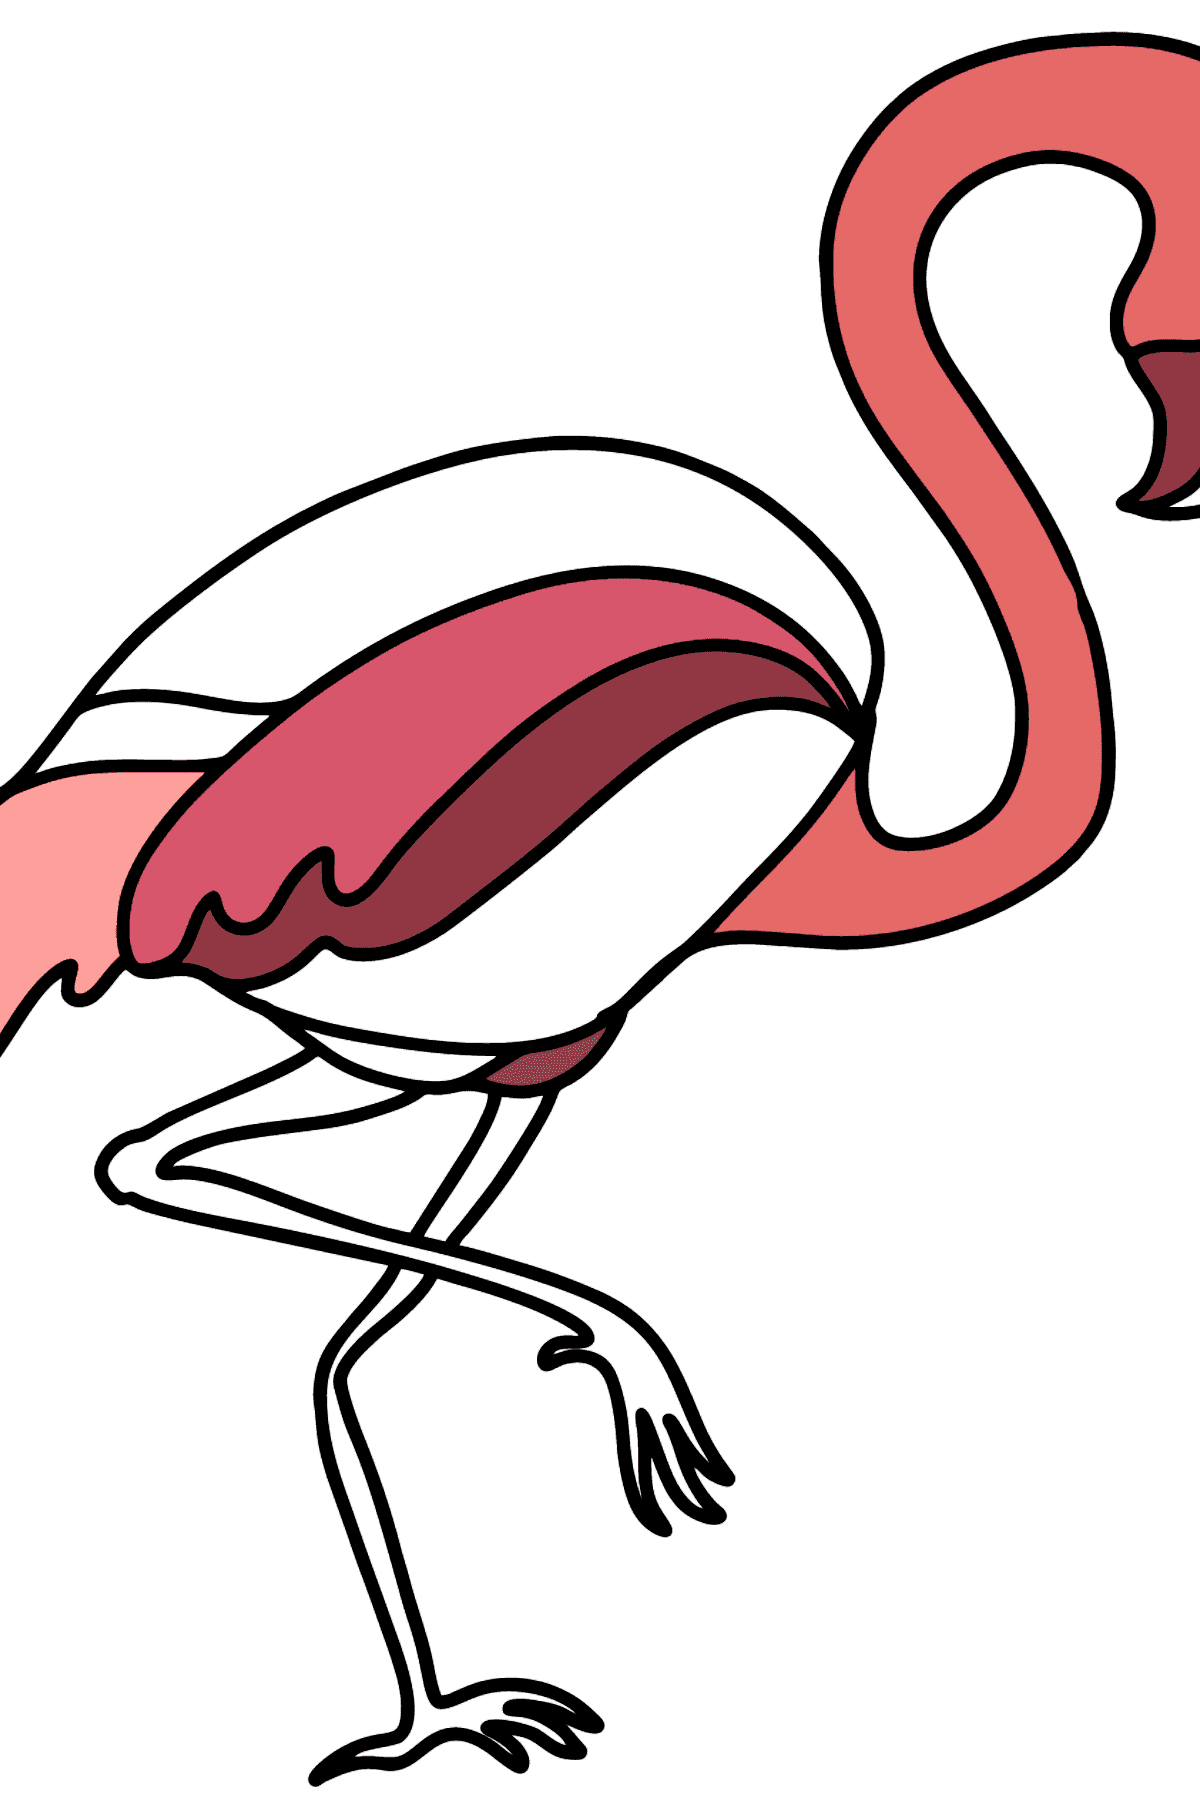 Flamingo tegning til fargelegging - Tegninger til fargelegging for barn